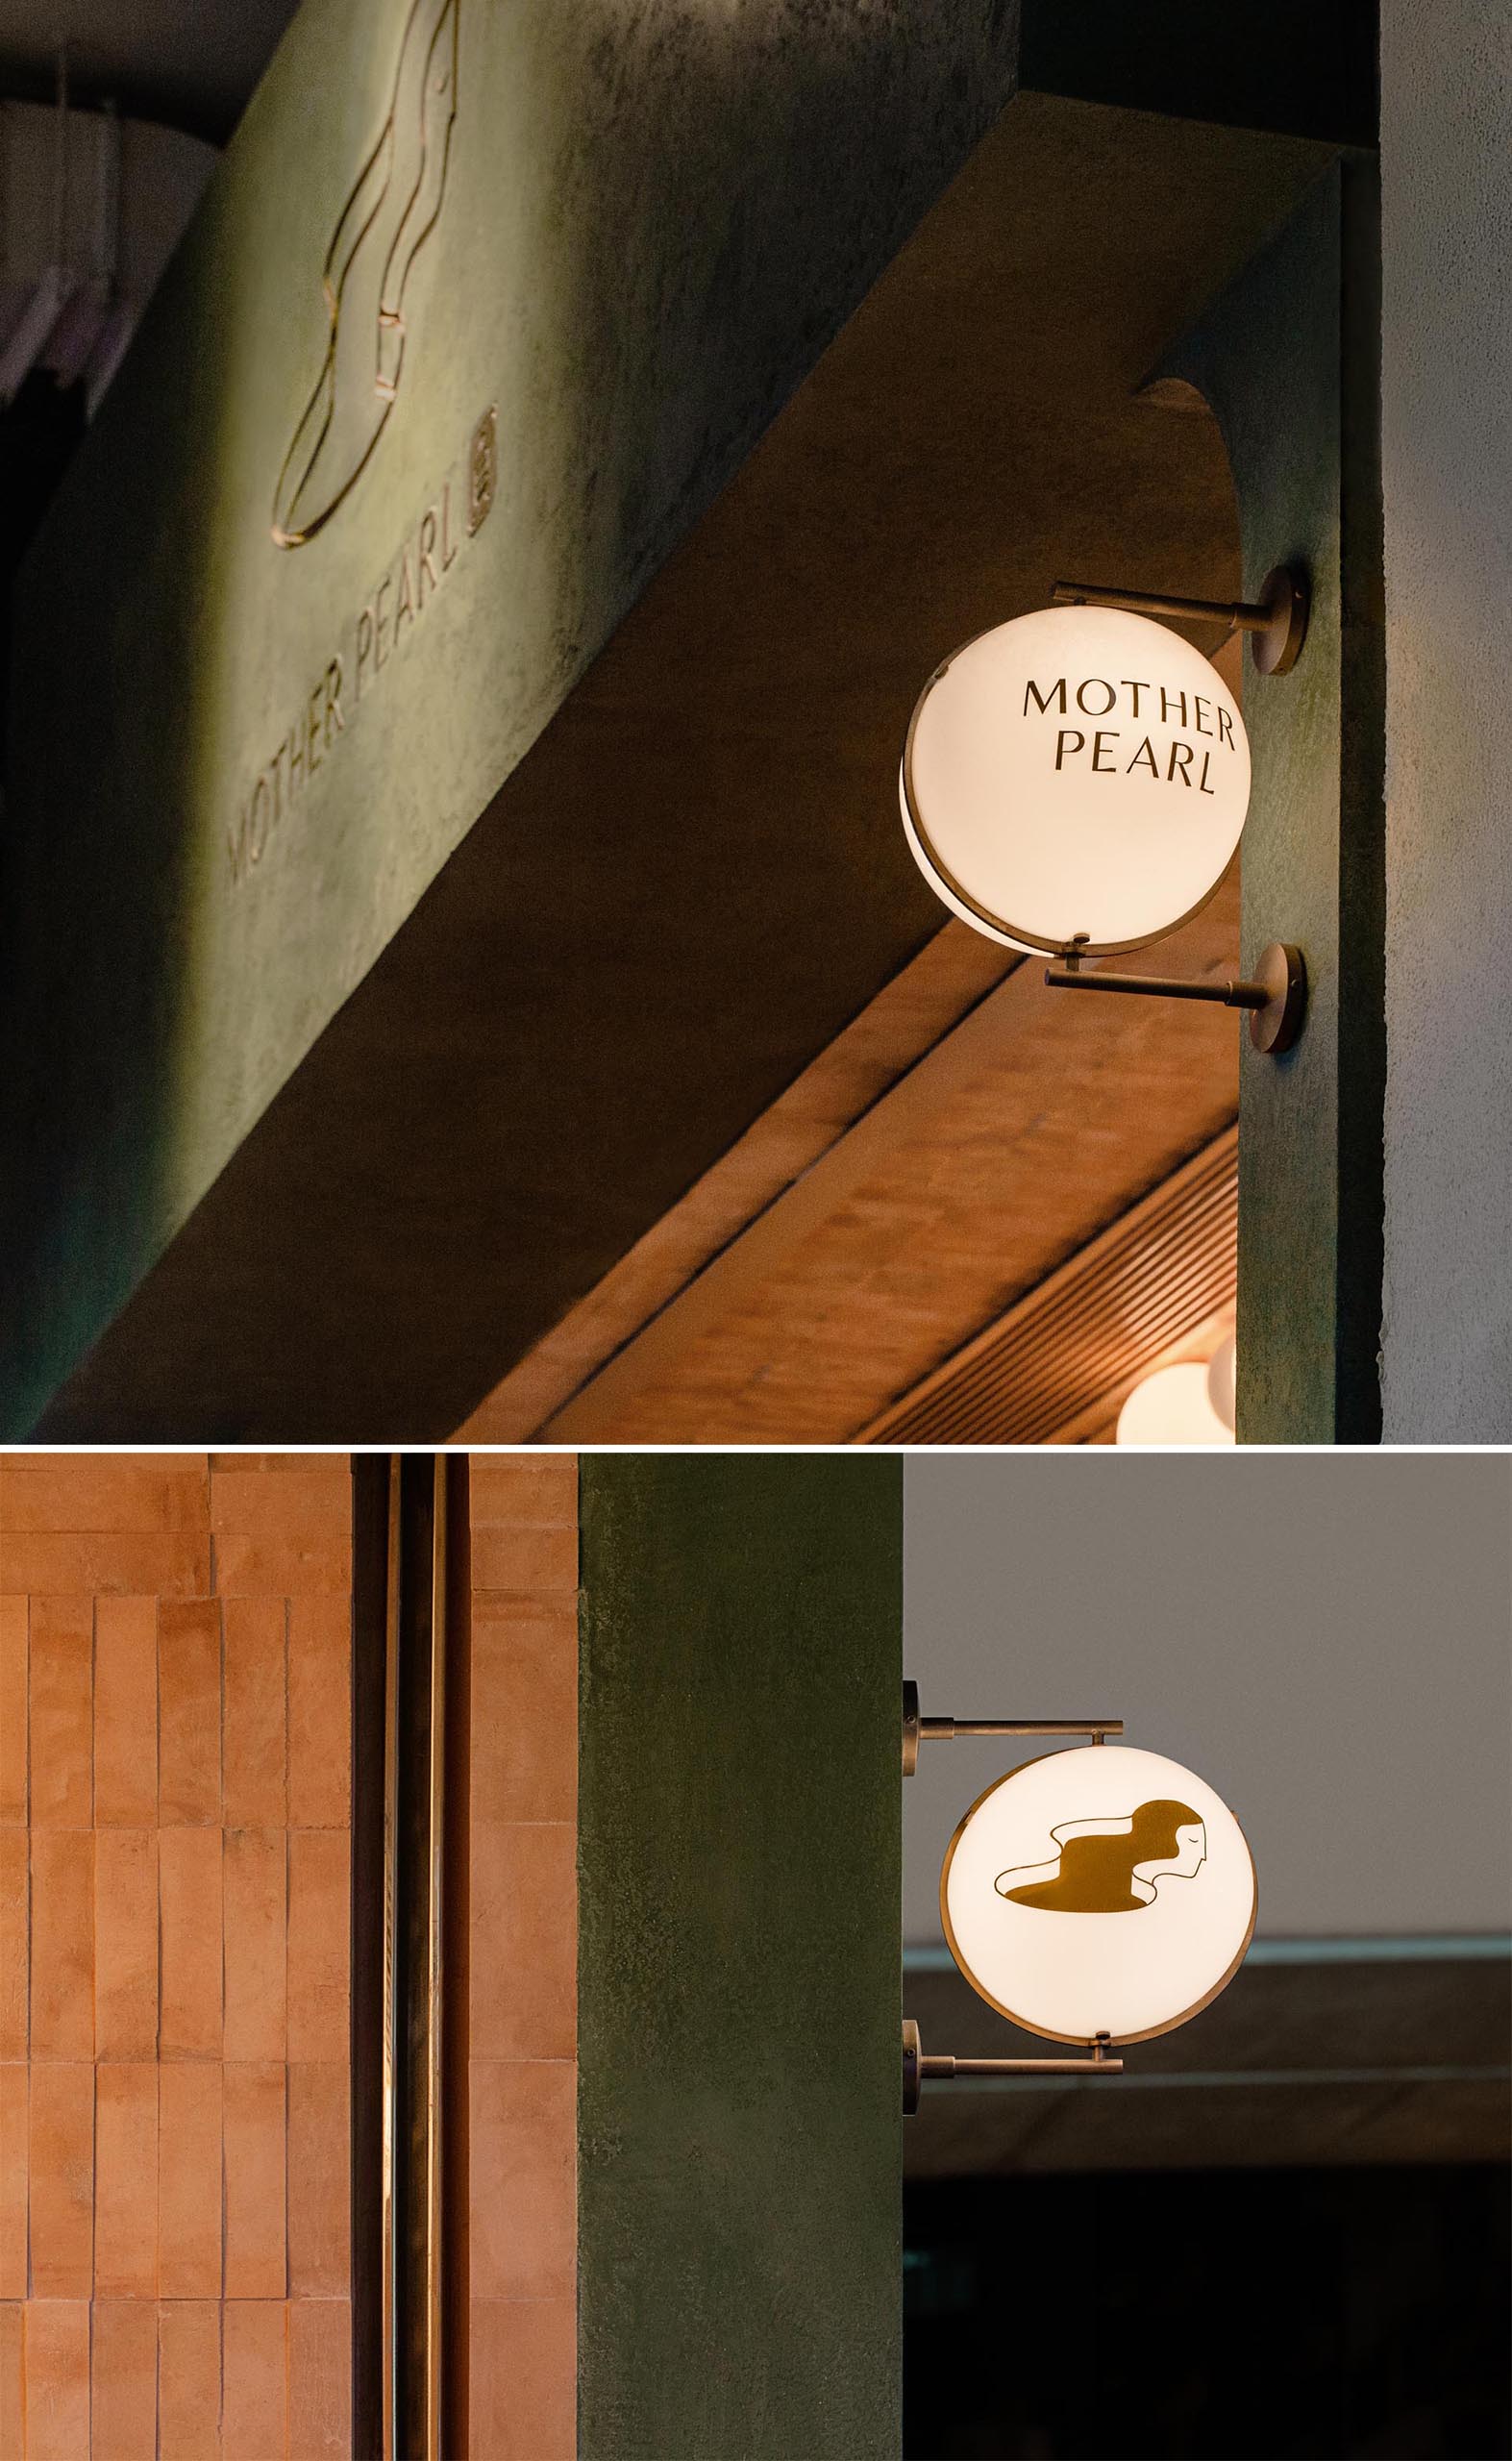 Огни-глобусы, прикрепленные к фасаду с помощью металлических светильников, показывают прохожим название чайного домика и его логотип.